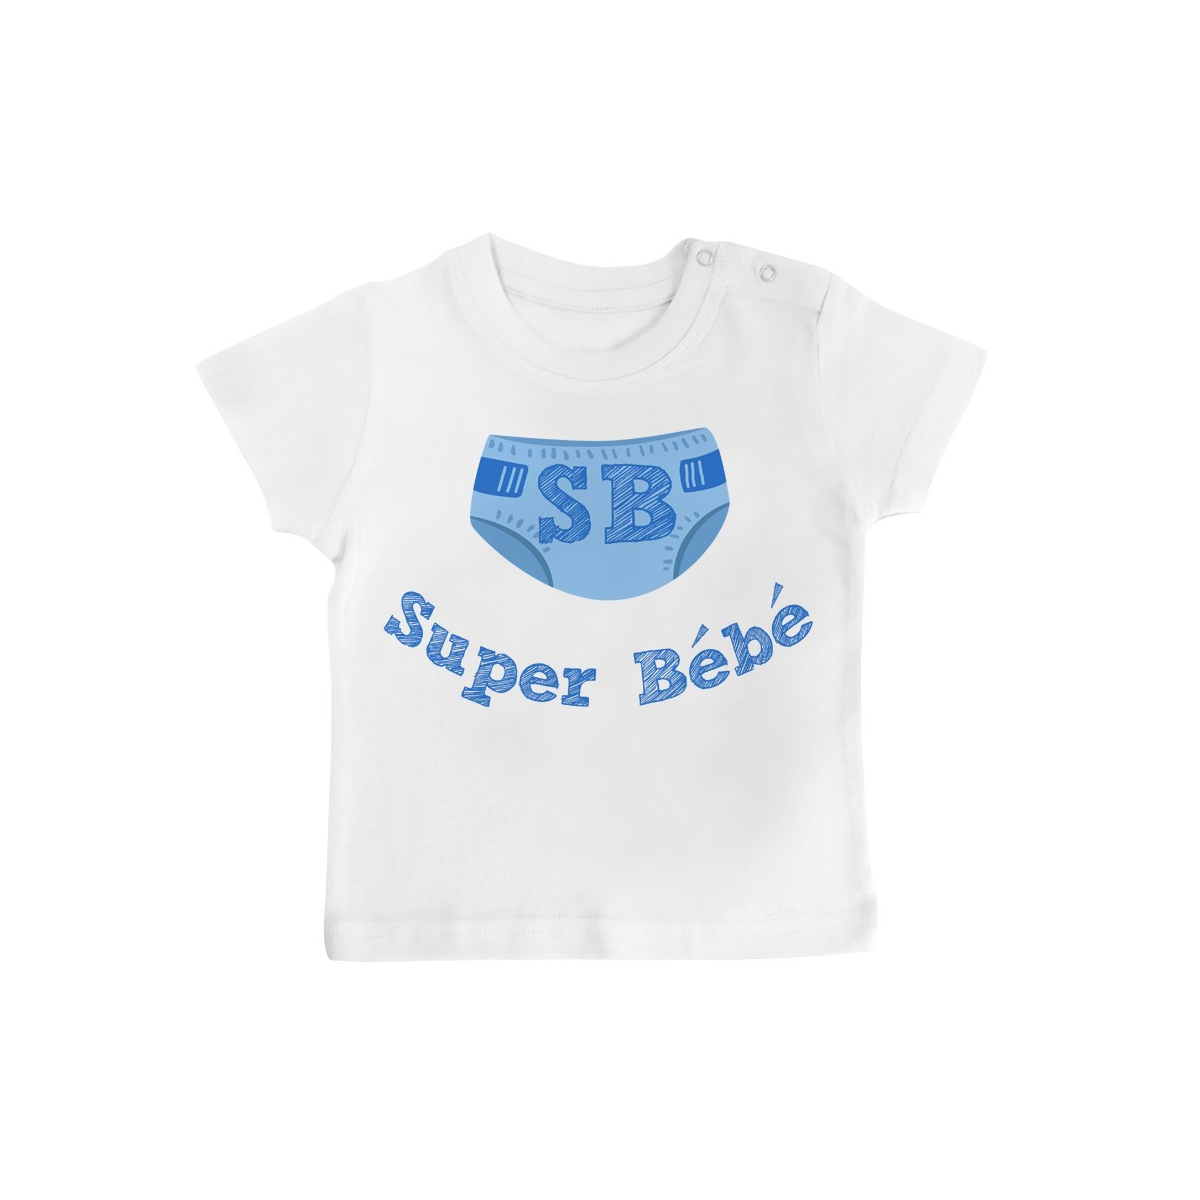 T-Shirt bébé Super Bébé ( version garçon )